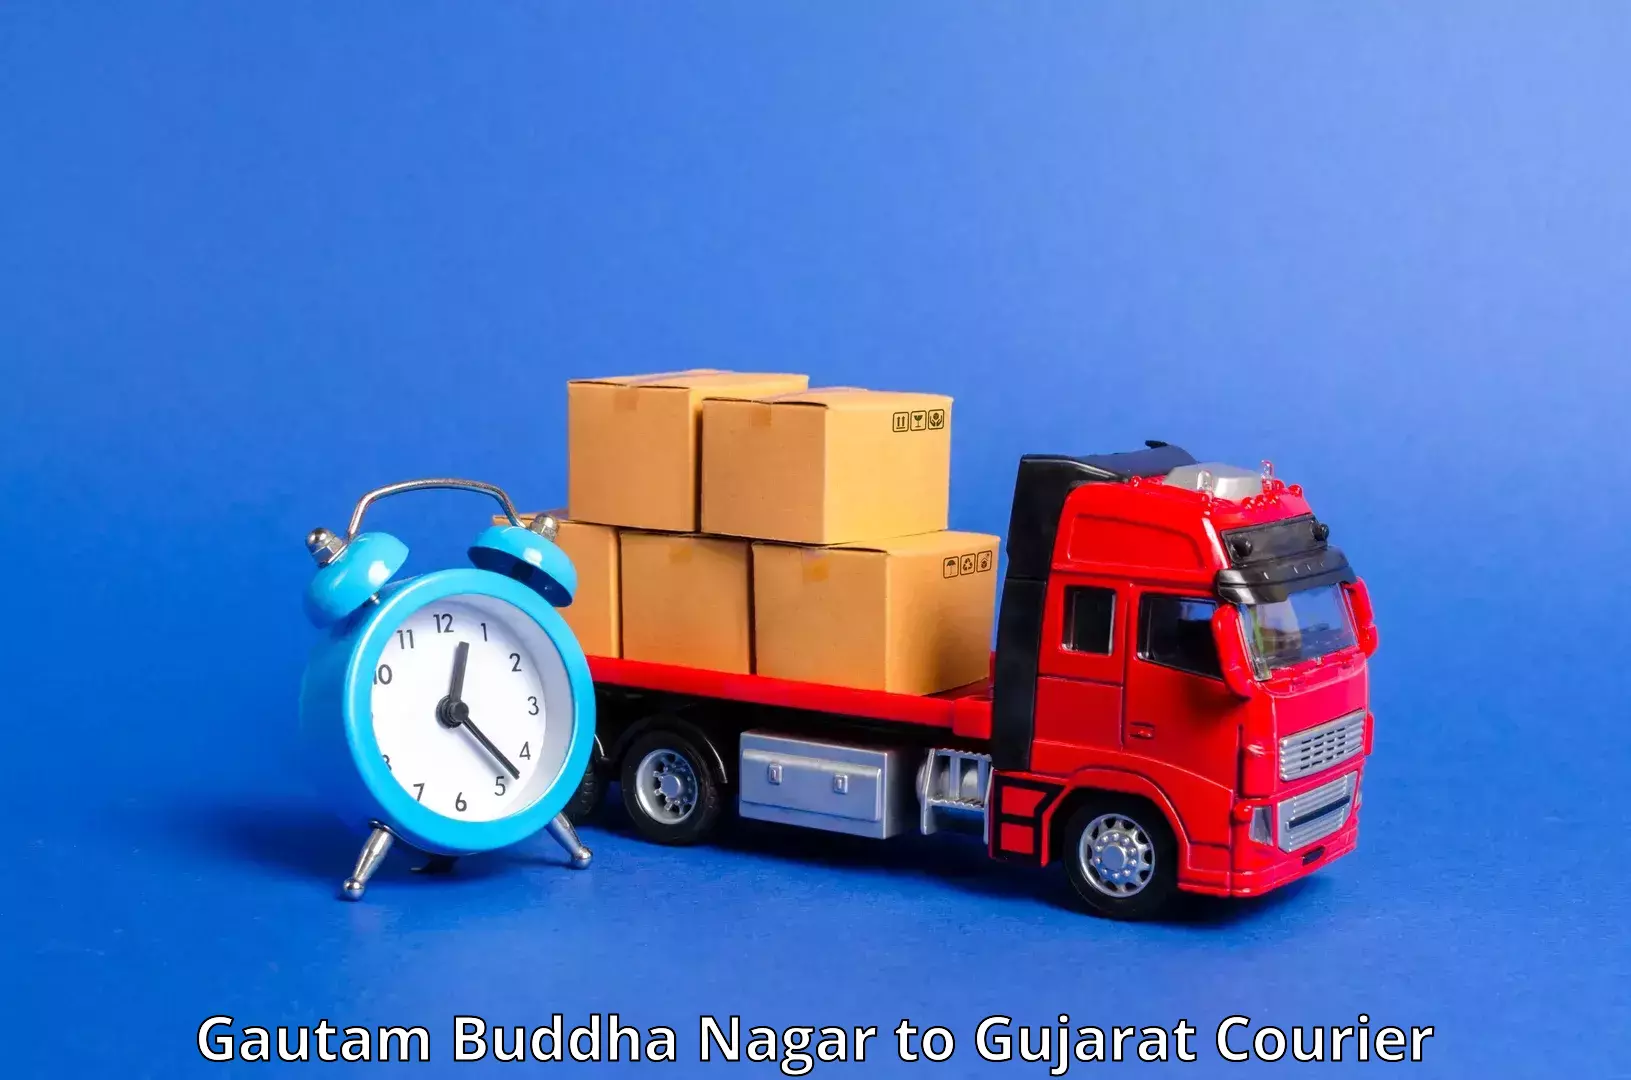 Digital courier platforms Gautam Buddha Nagar to Vijapur